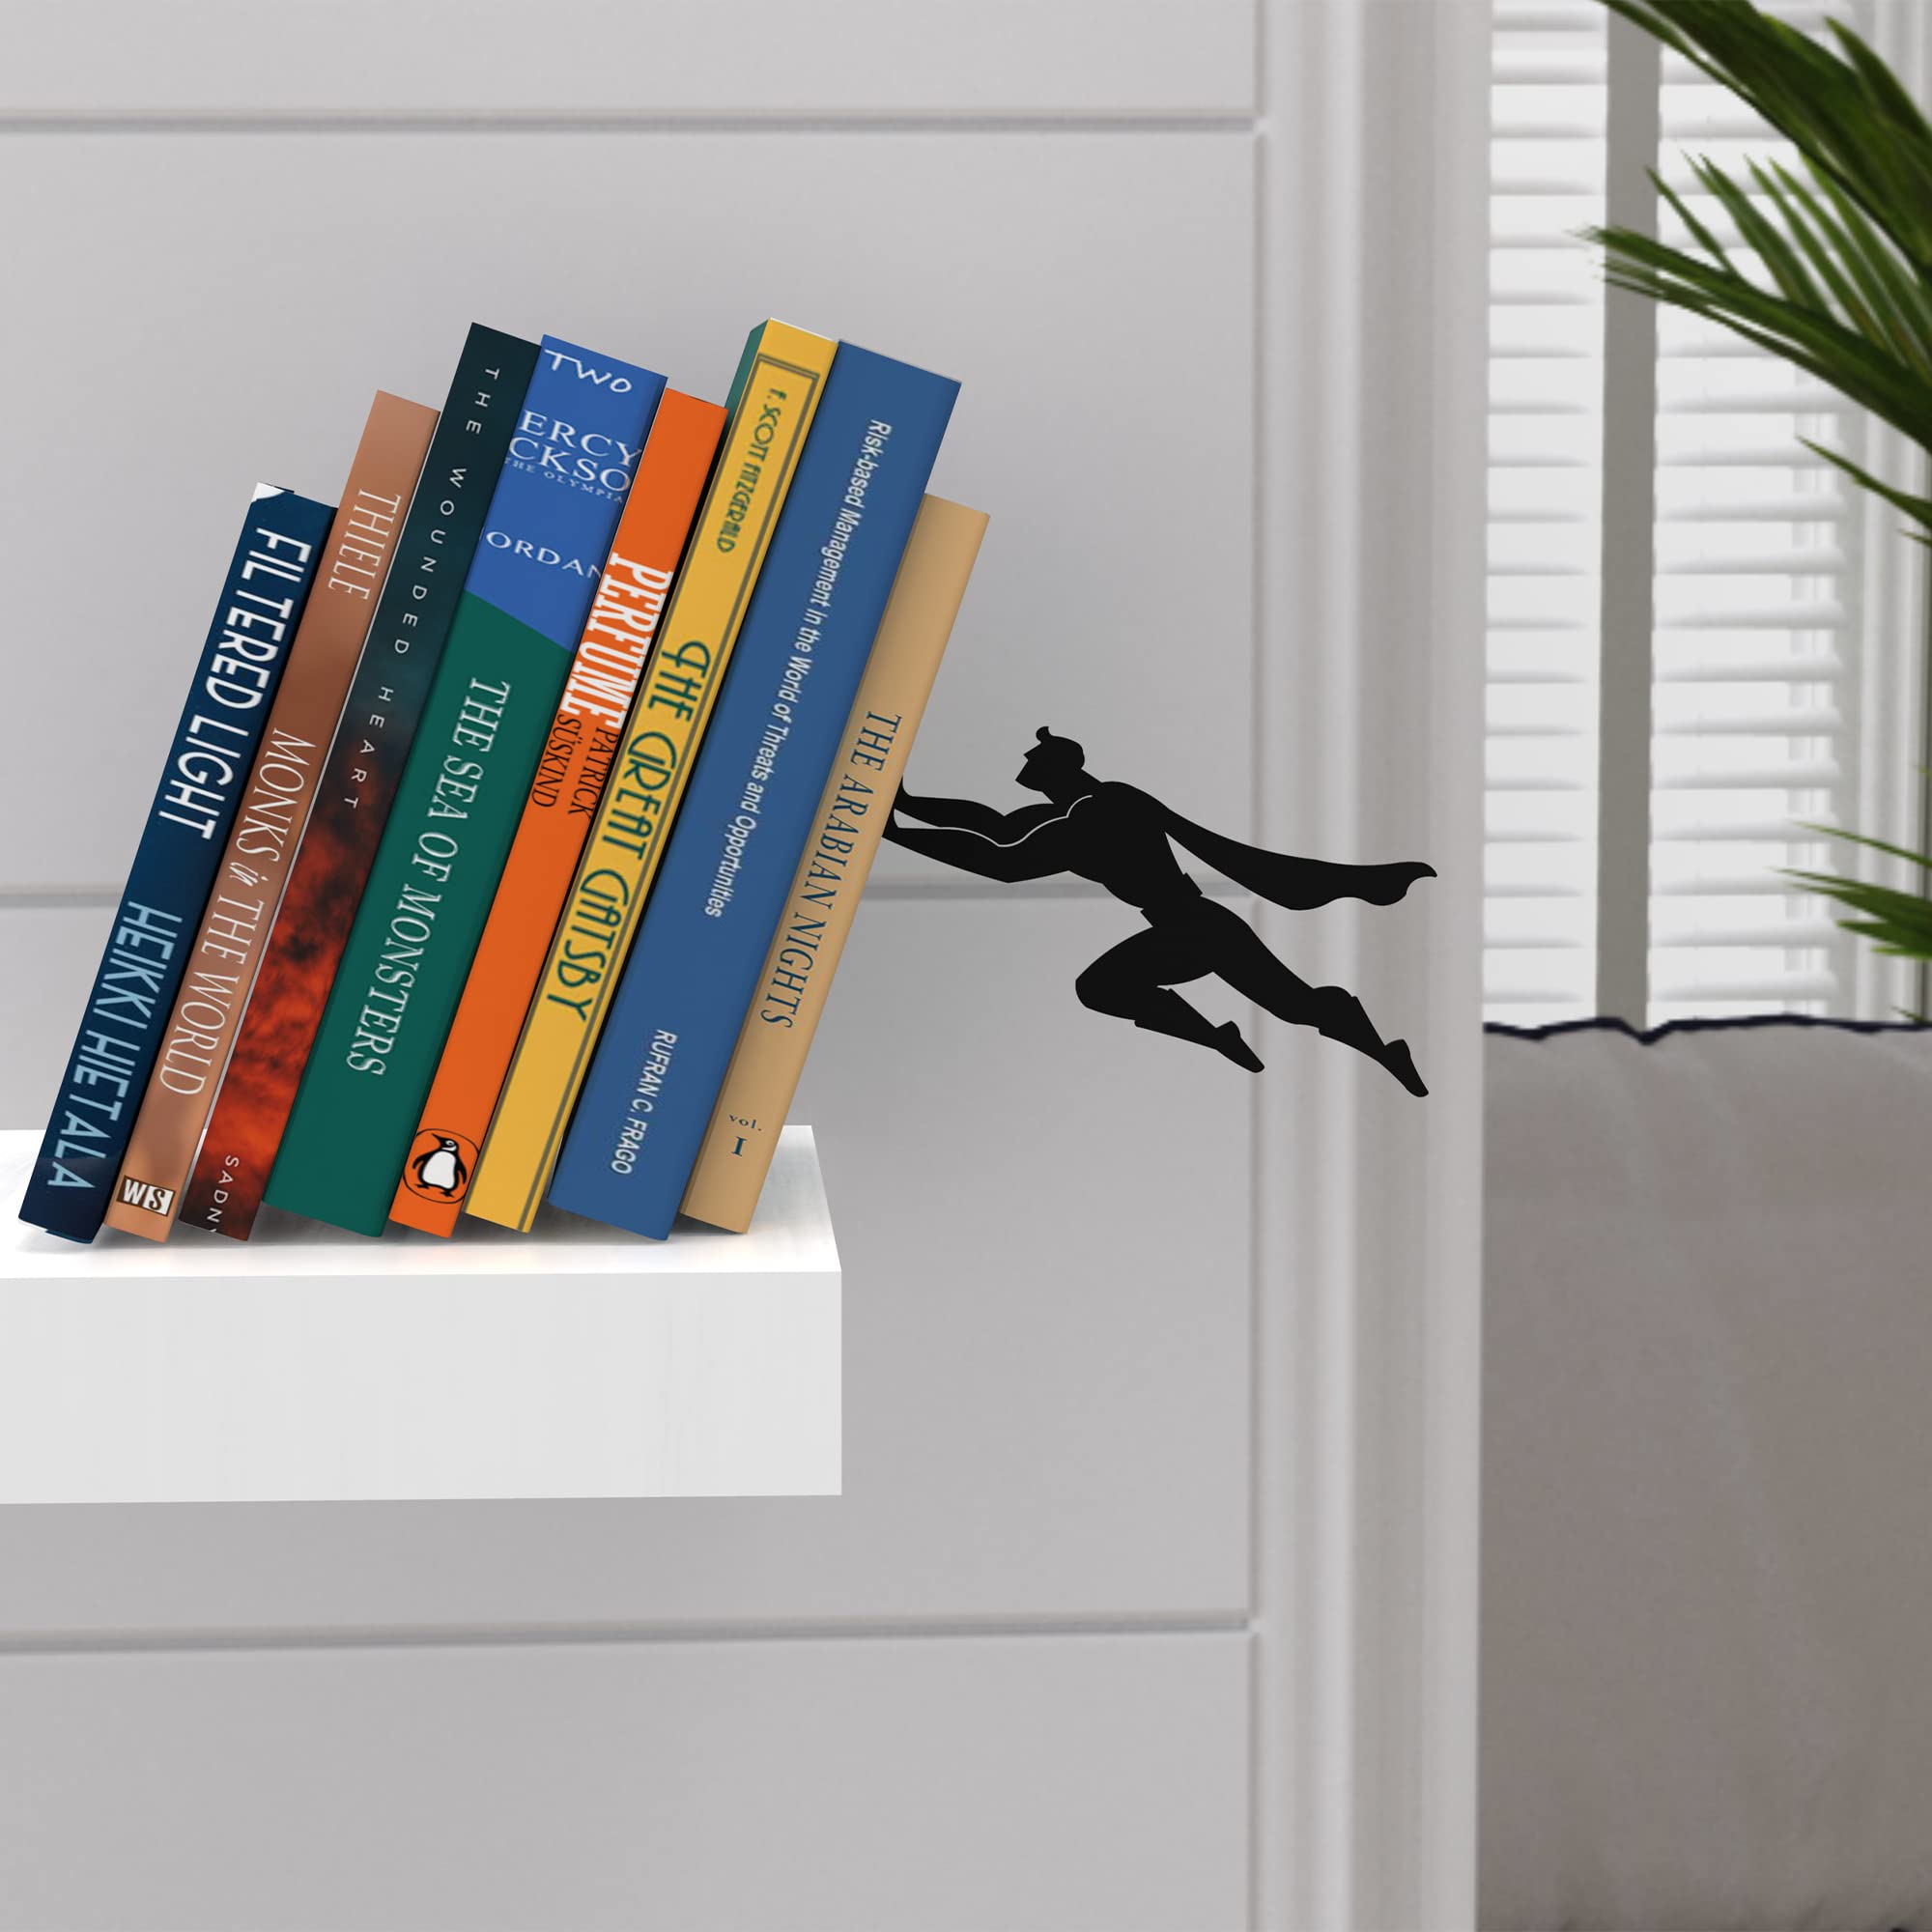 以色列创意磁力悬浮英雄超人书立书挡书架图书置物架书靠书房装饰